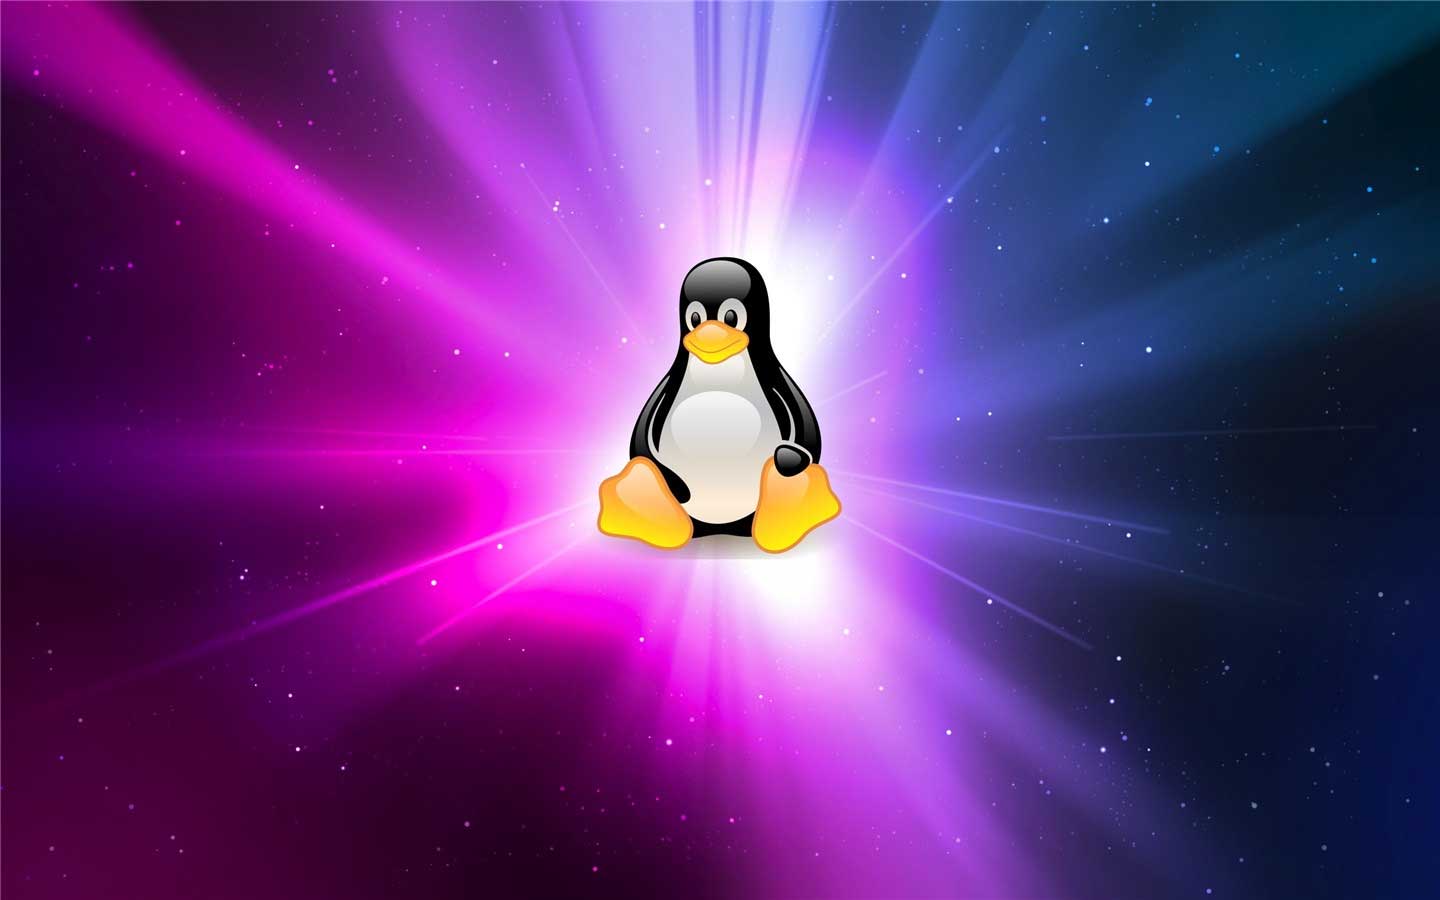 请尽快升级Ubuntu! 内核发现拒绝服务或执行任意代码漏洞